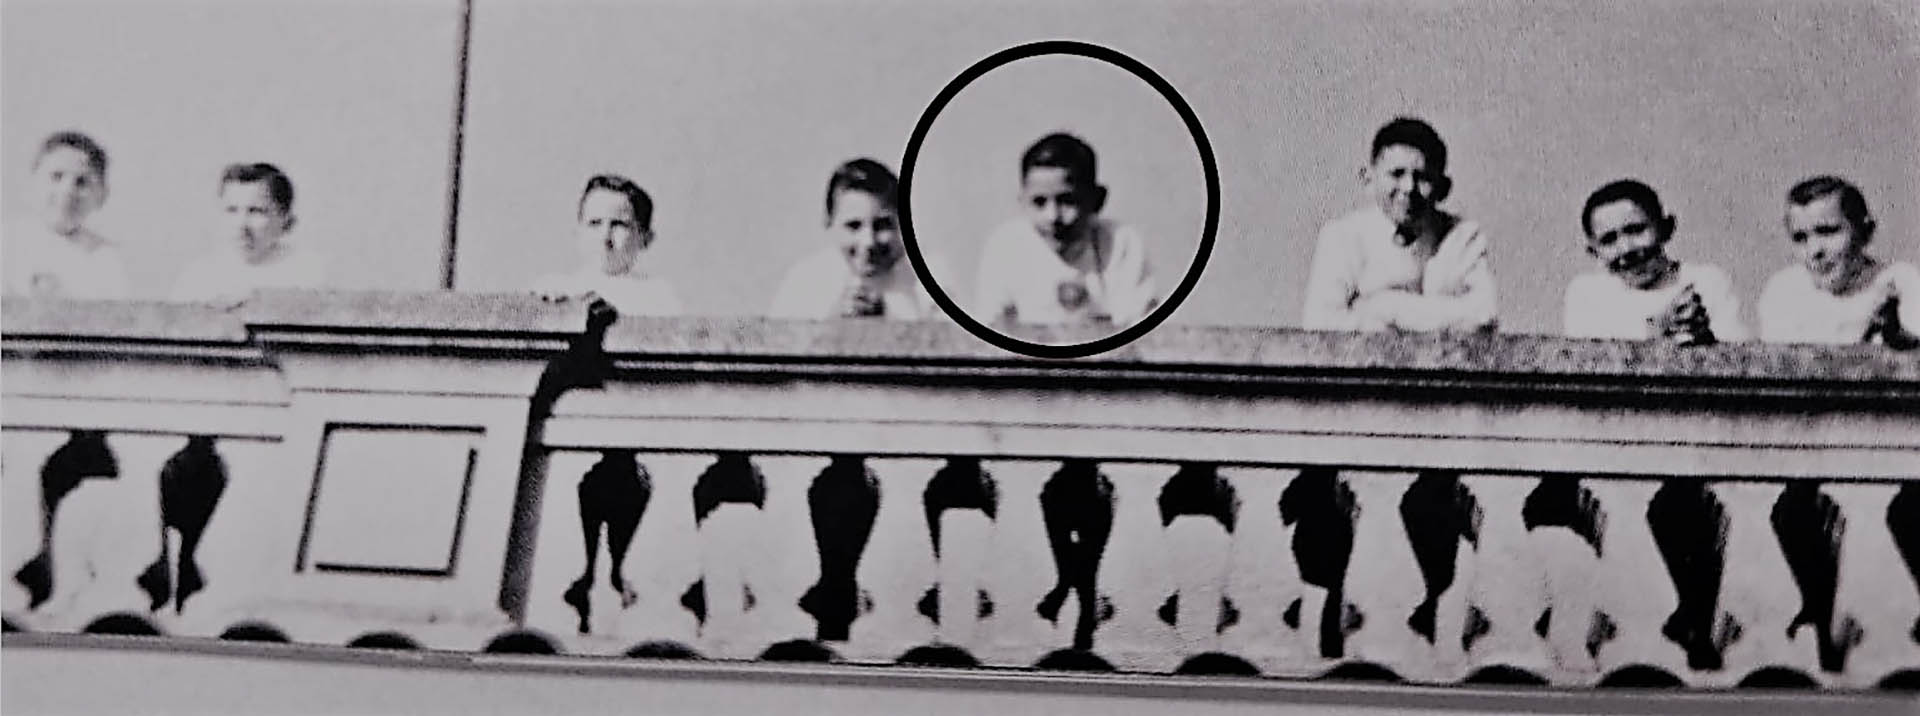 Francisco mirando desde un balcón durante su escuela primaria